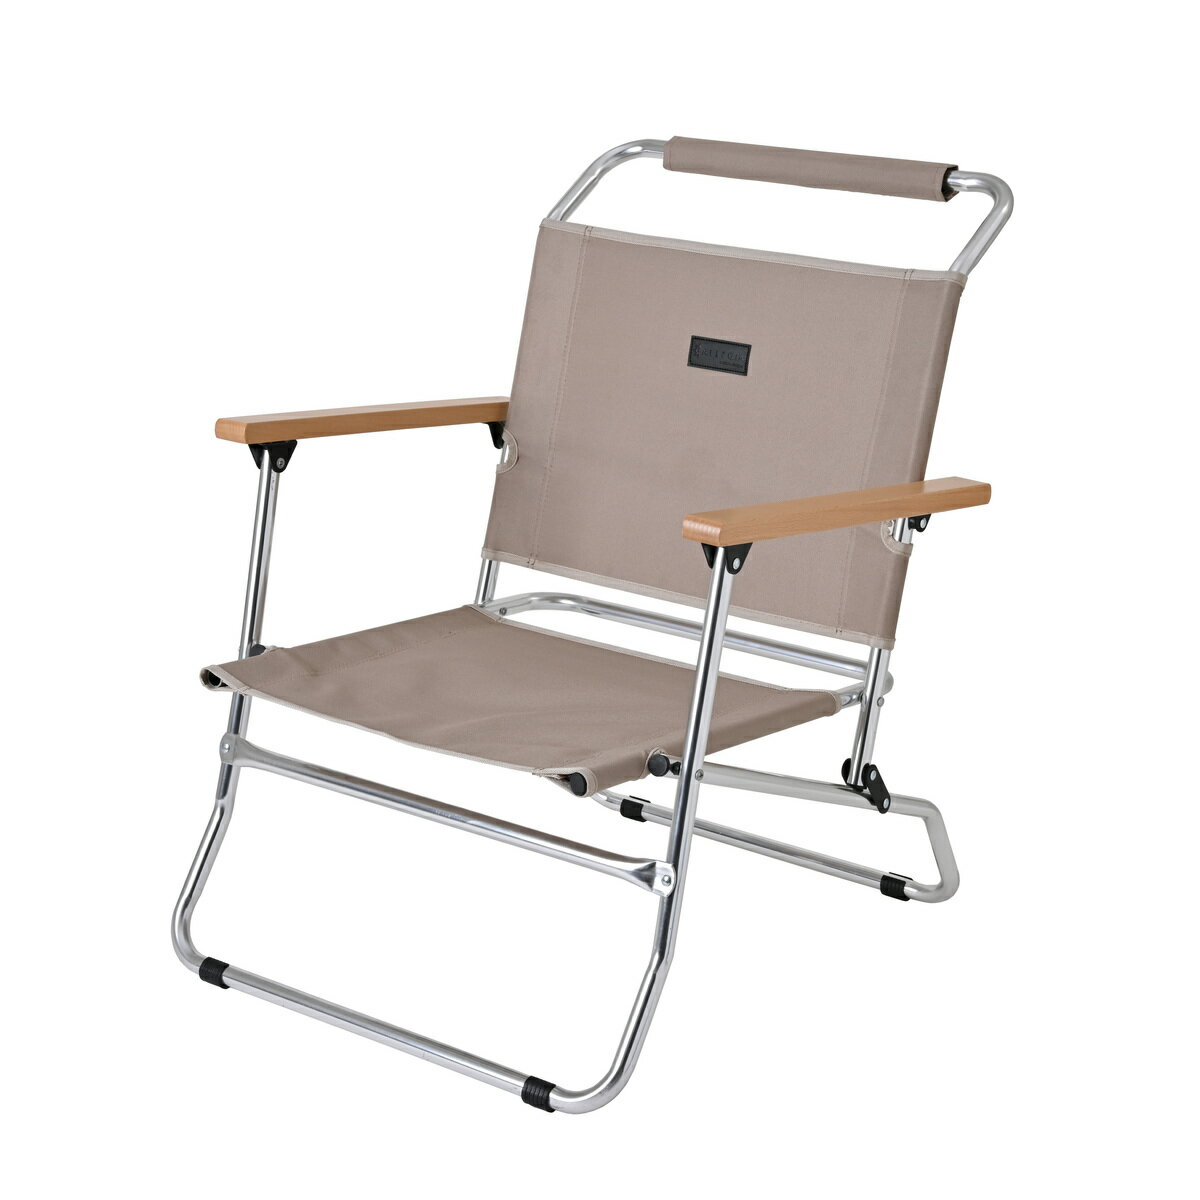 アレジア ラグジュアリー ローバーチェア ロータイプ ワイド チェア 椅子 アウトドア 木製肘掛け アルミフレーム コンパクト 折りたたみ 収納 耐荷重120kg キャンプ AR-LXLC1 サンド ALLEGiA